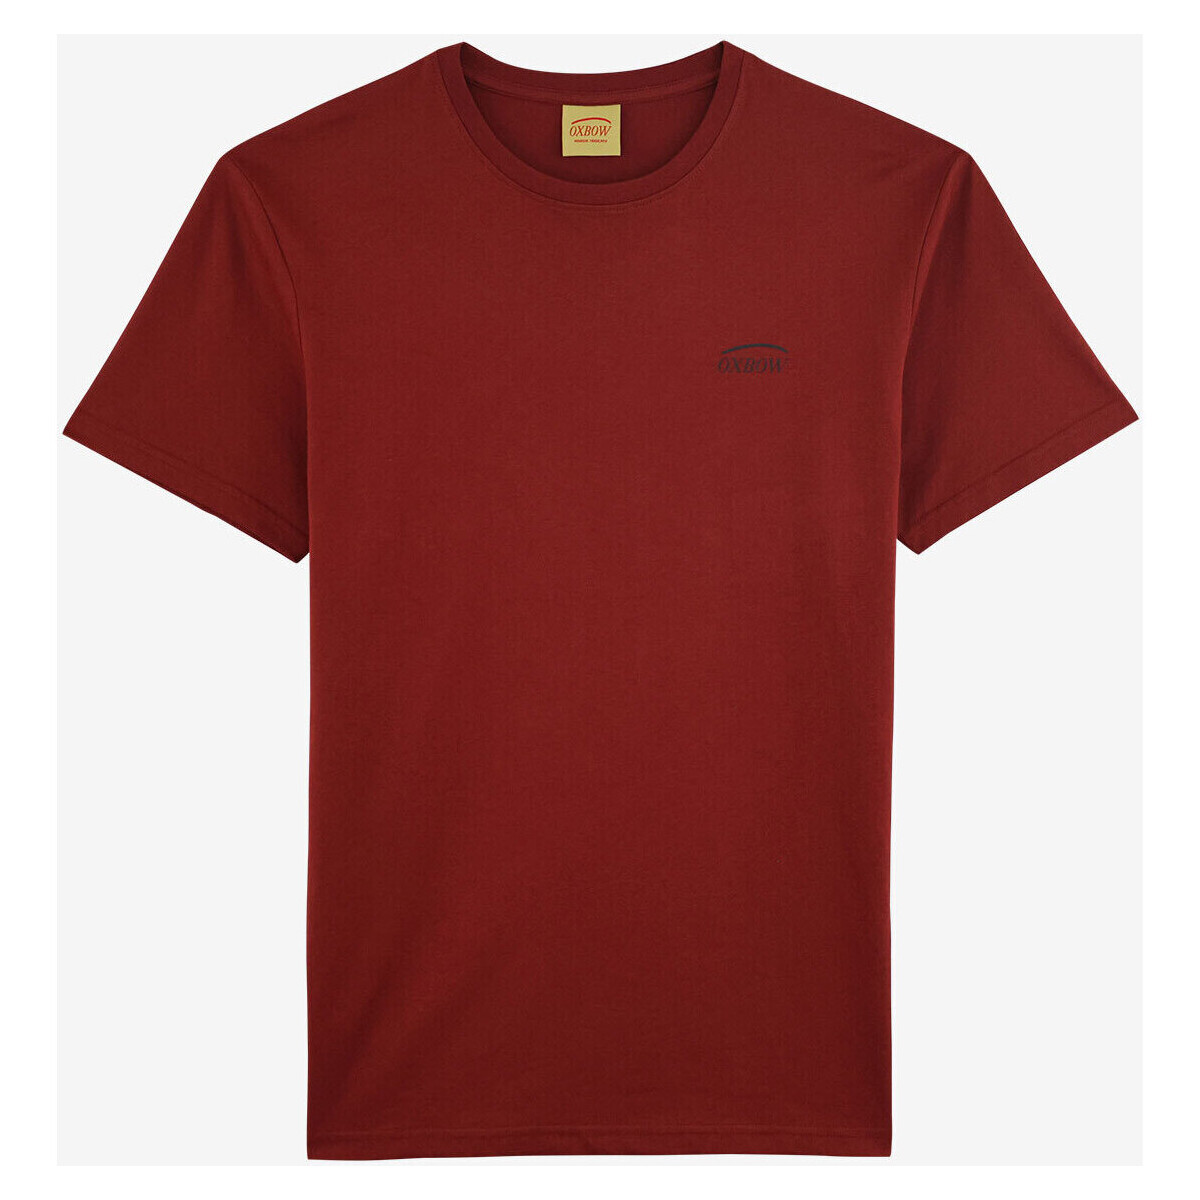 Vêtements Homme T-shirts manches courtes Oxbow Tee-shirt manches courtes imprimé P2TAGTAN Rouge